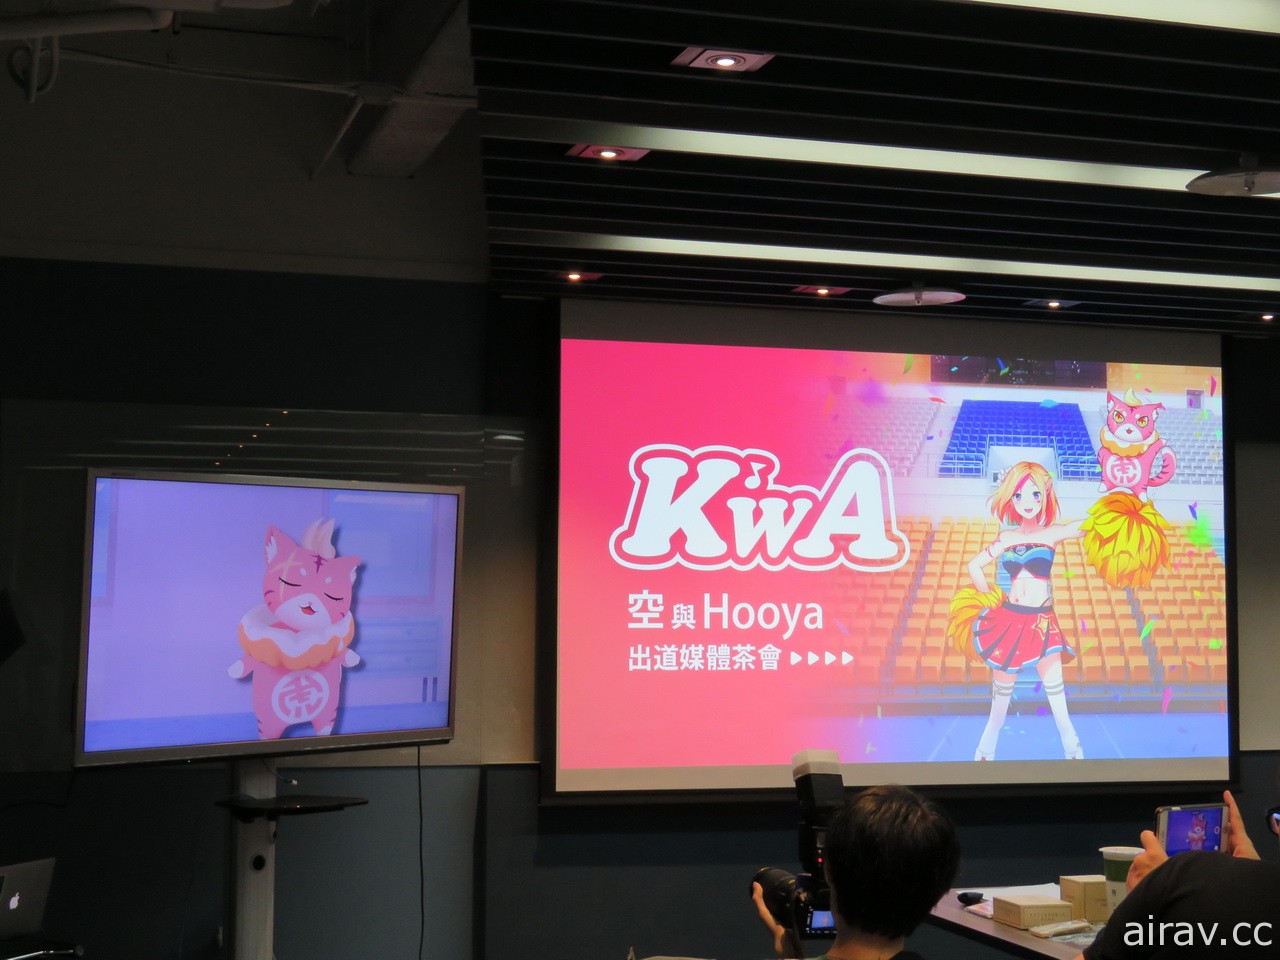 美少女「空」搭配吉祥物「Hooya」台灣首個華語創作 Vtuber 團體「K』WA」正式出道